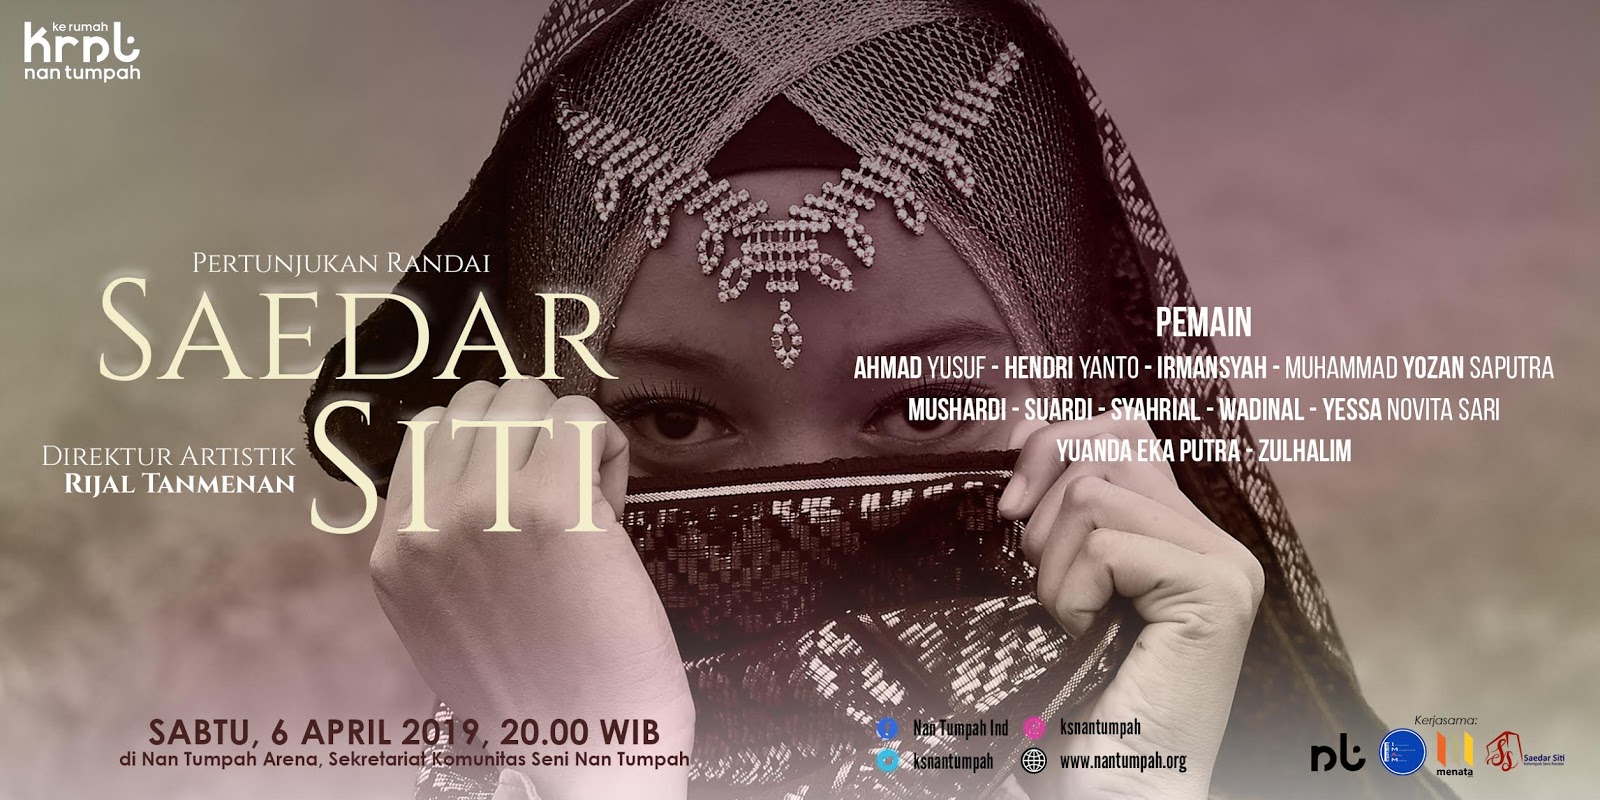 Program Ke Rumah Nan Tumpah : Pertunjukan Randai Saedar Siti